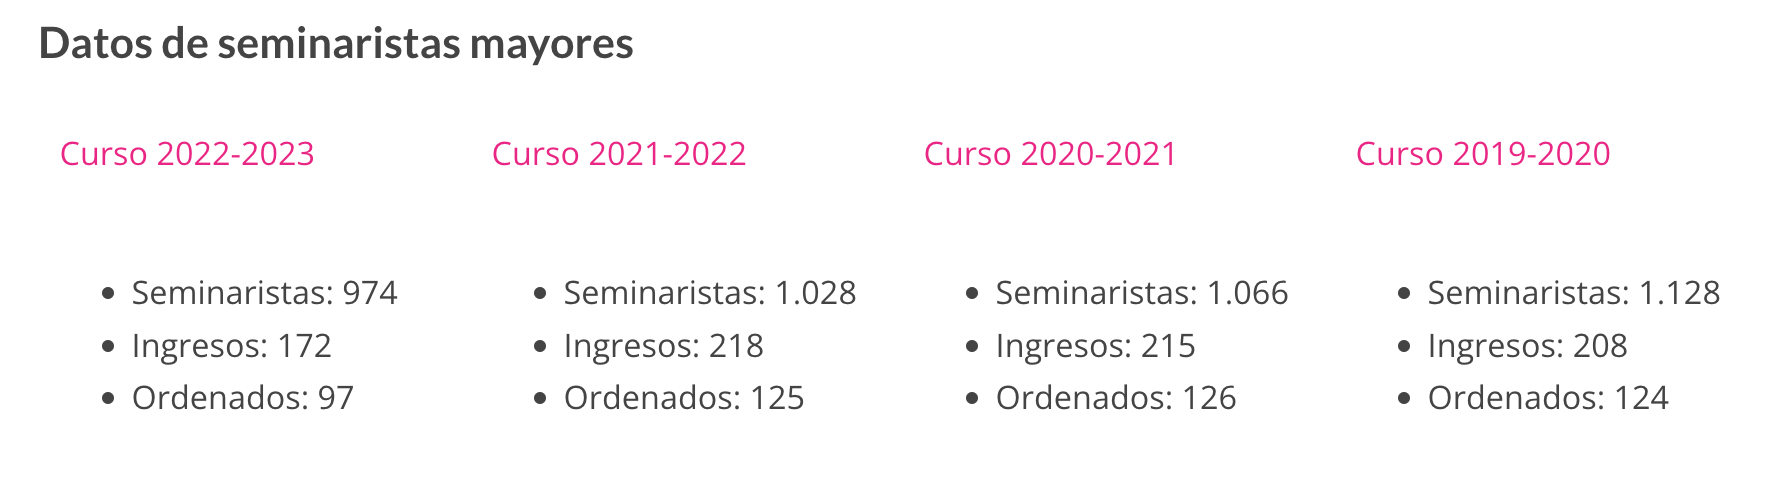 Datos de seminaristas en España en los últimos cuatro años.